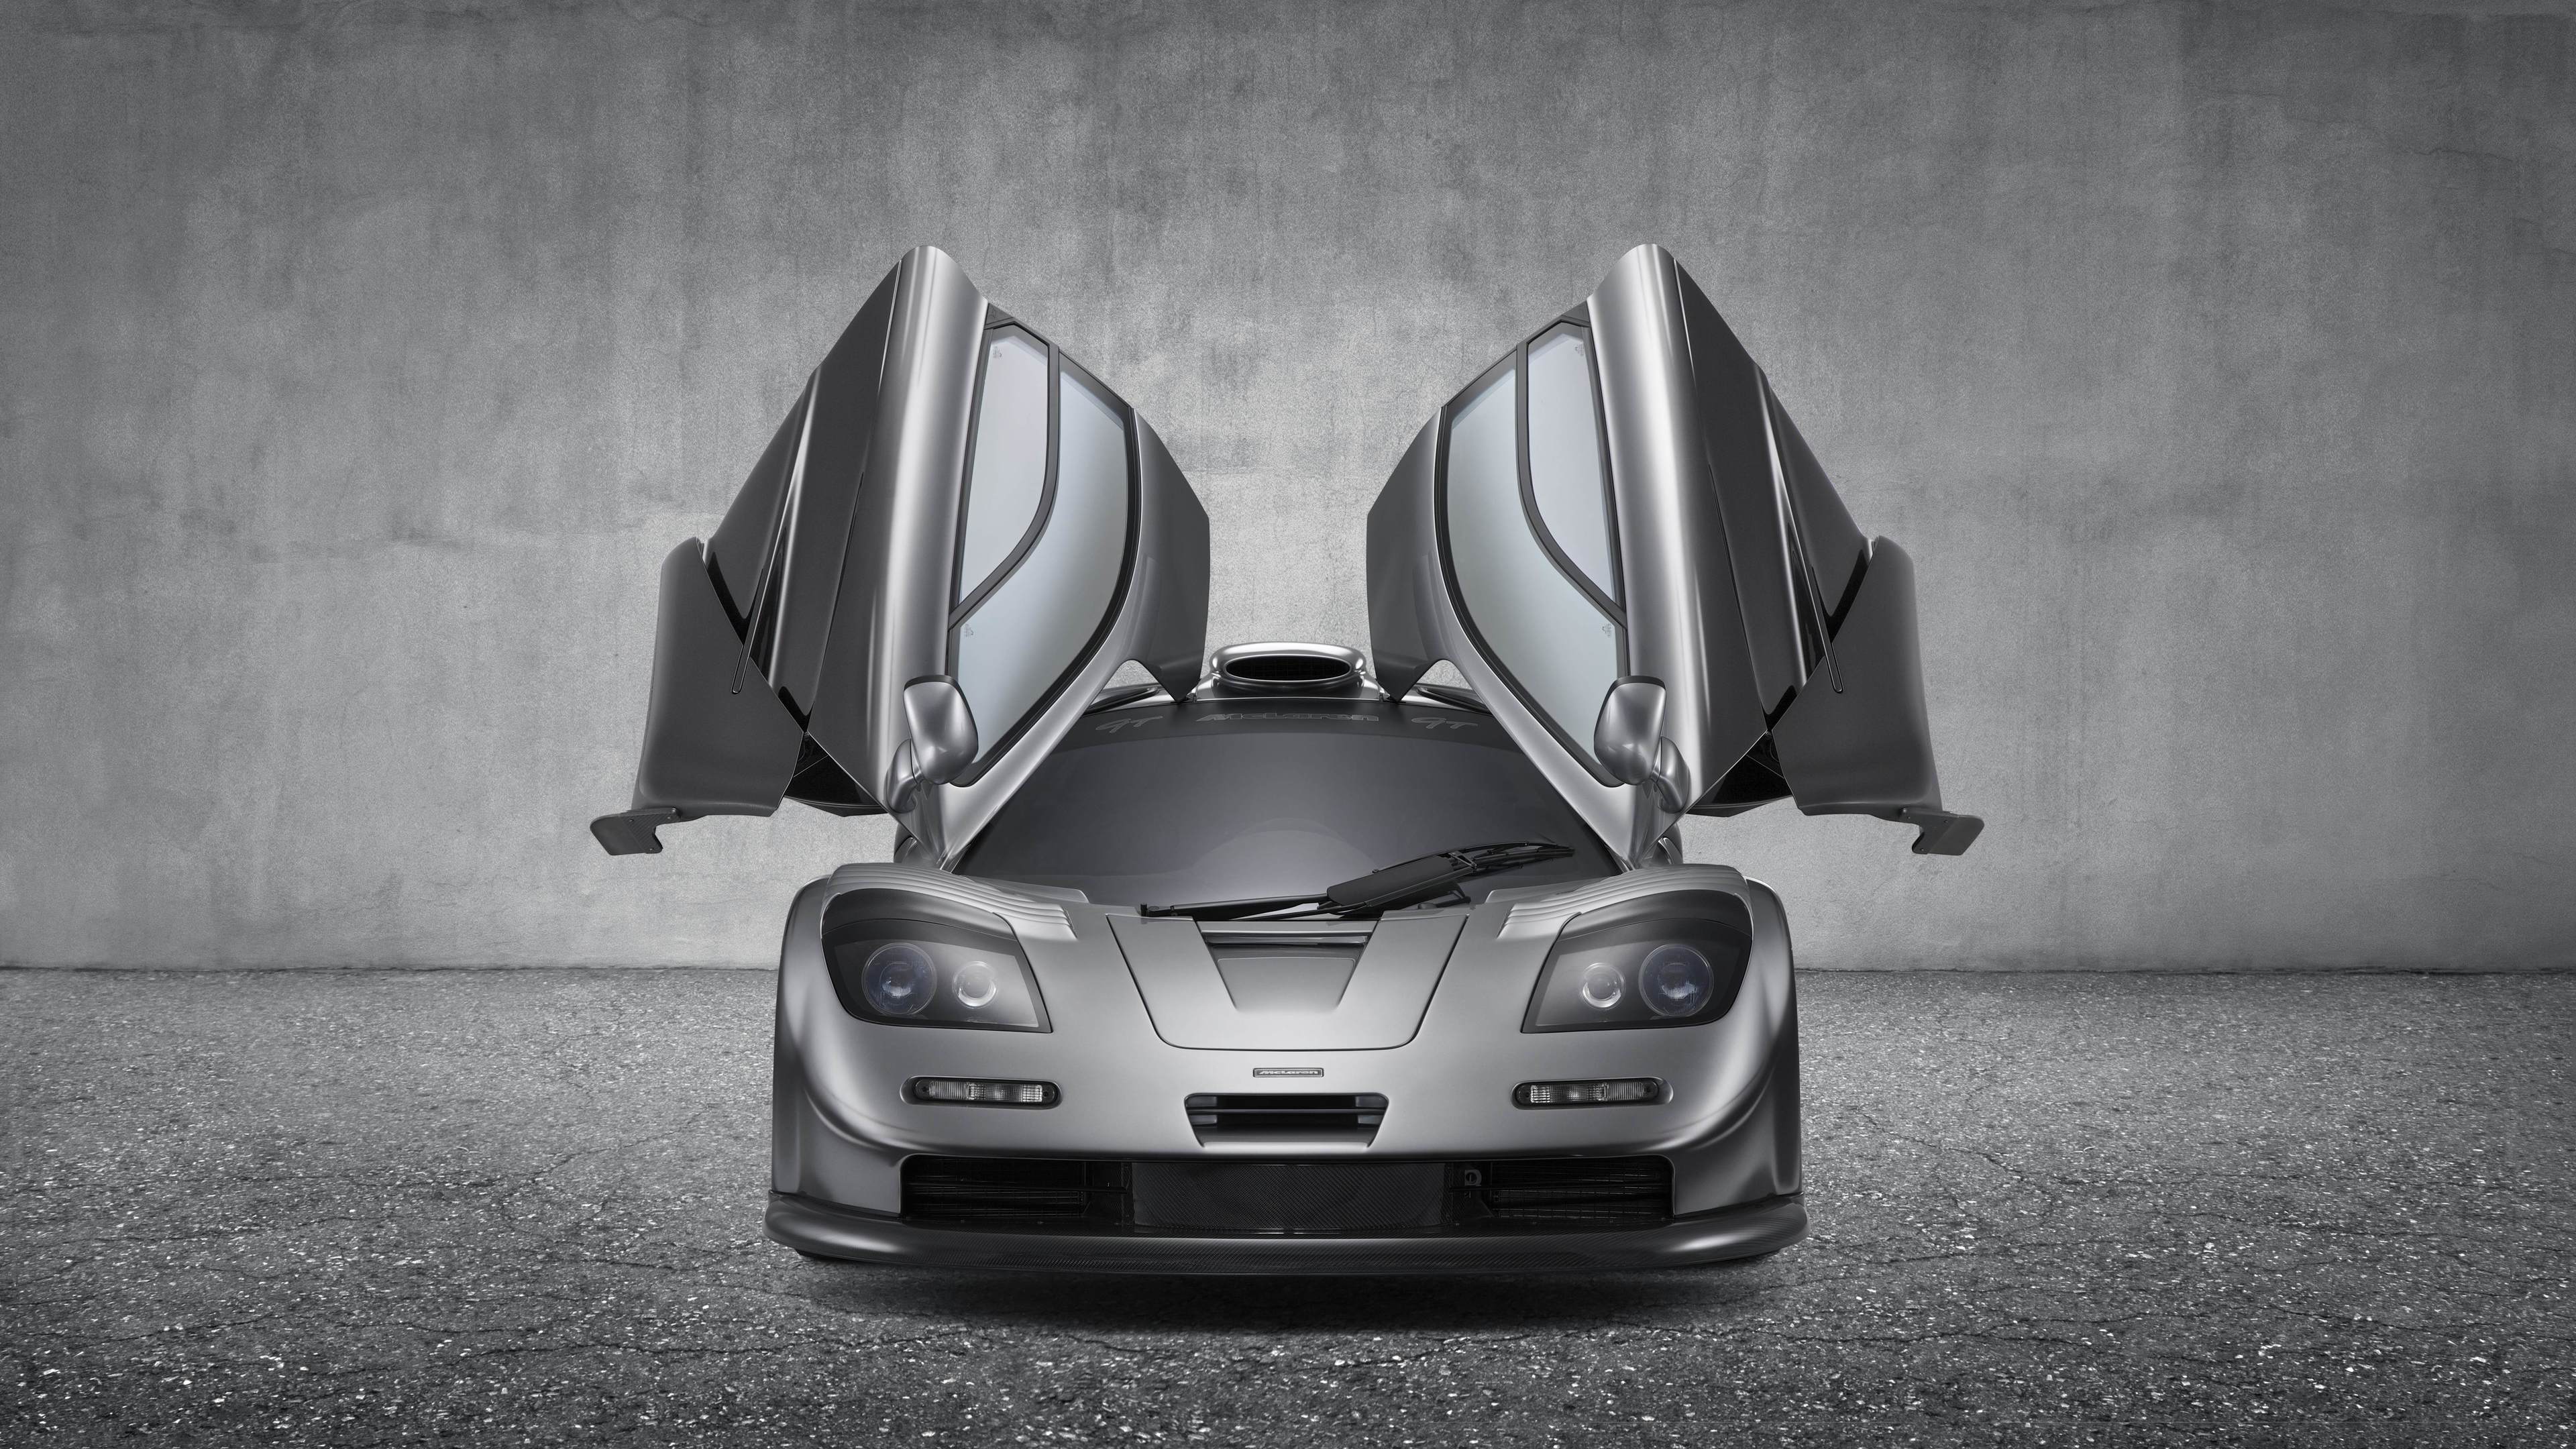 McLaren F1 GT Silver mclaren wallpapers, hd-wallpapers, cars wallpapers